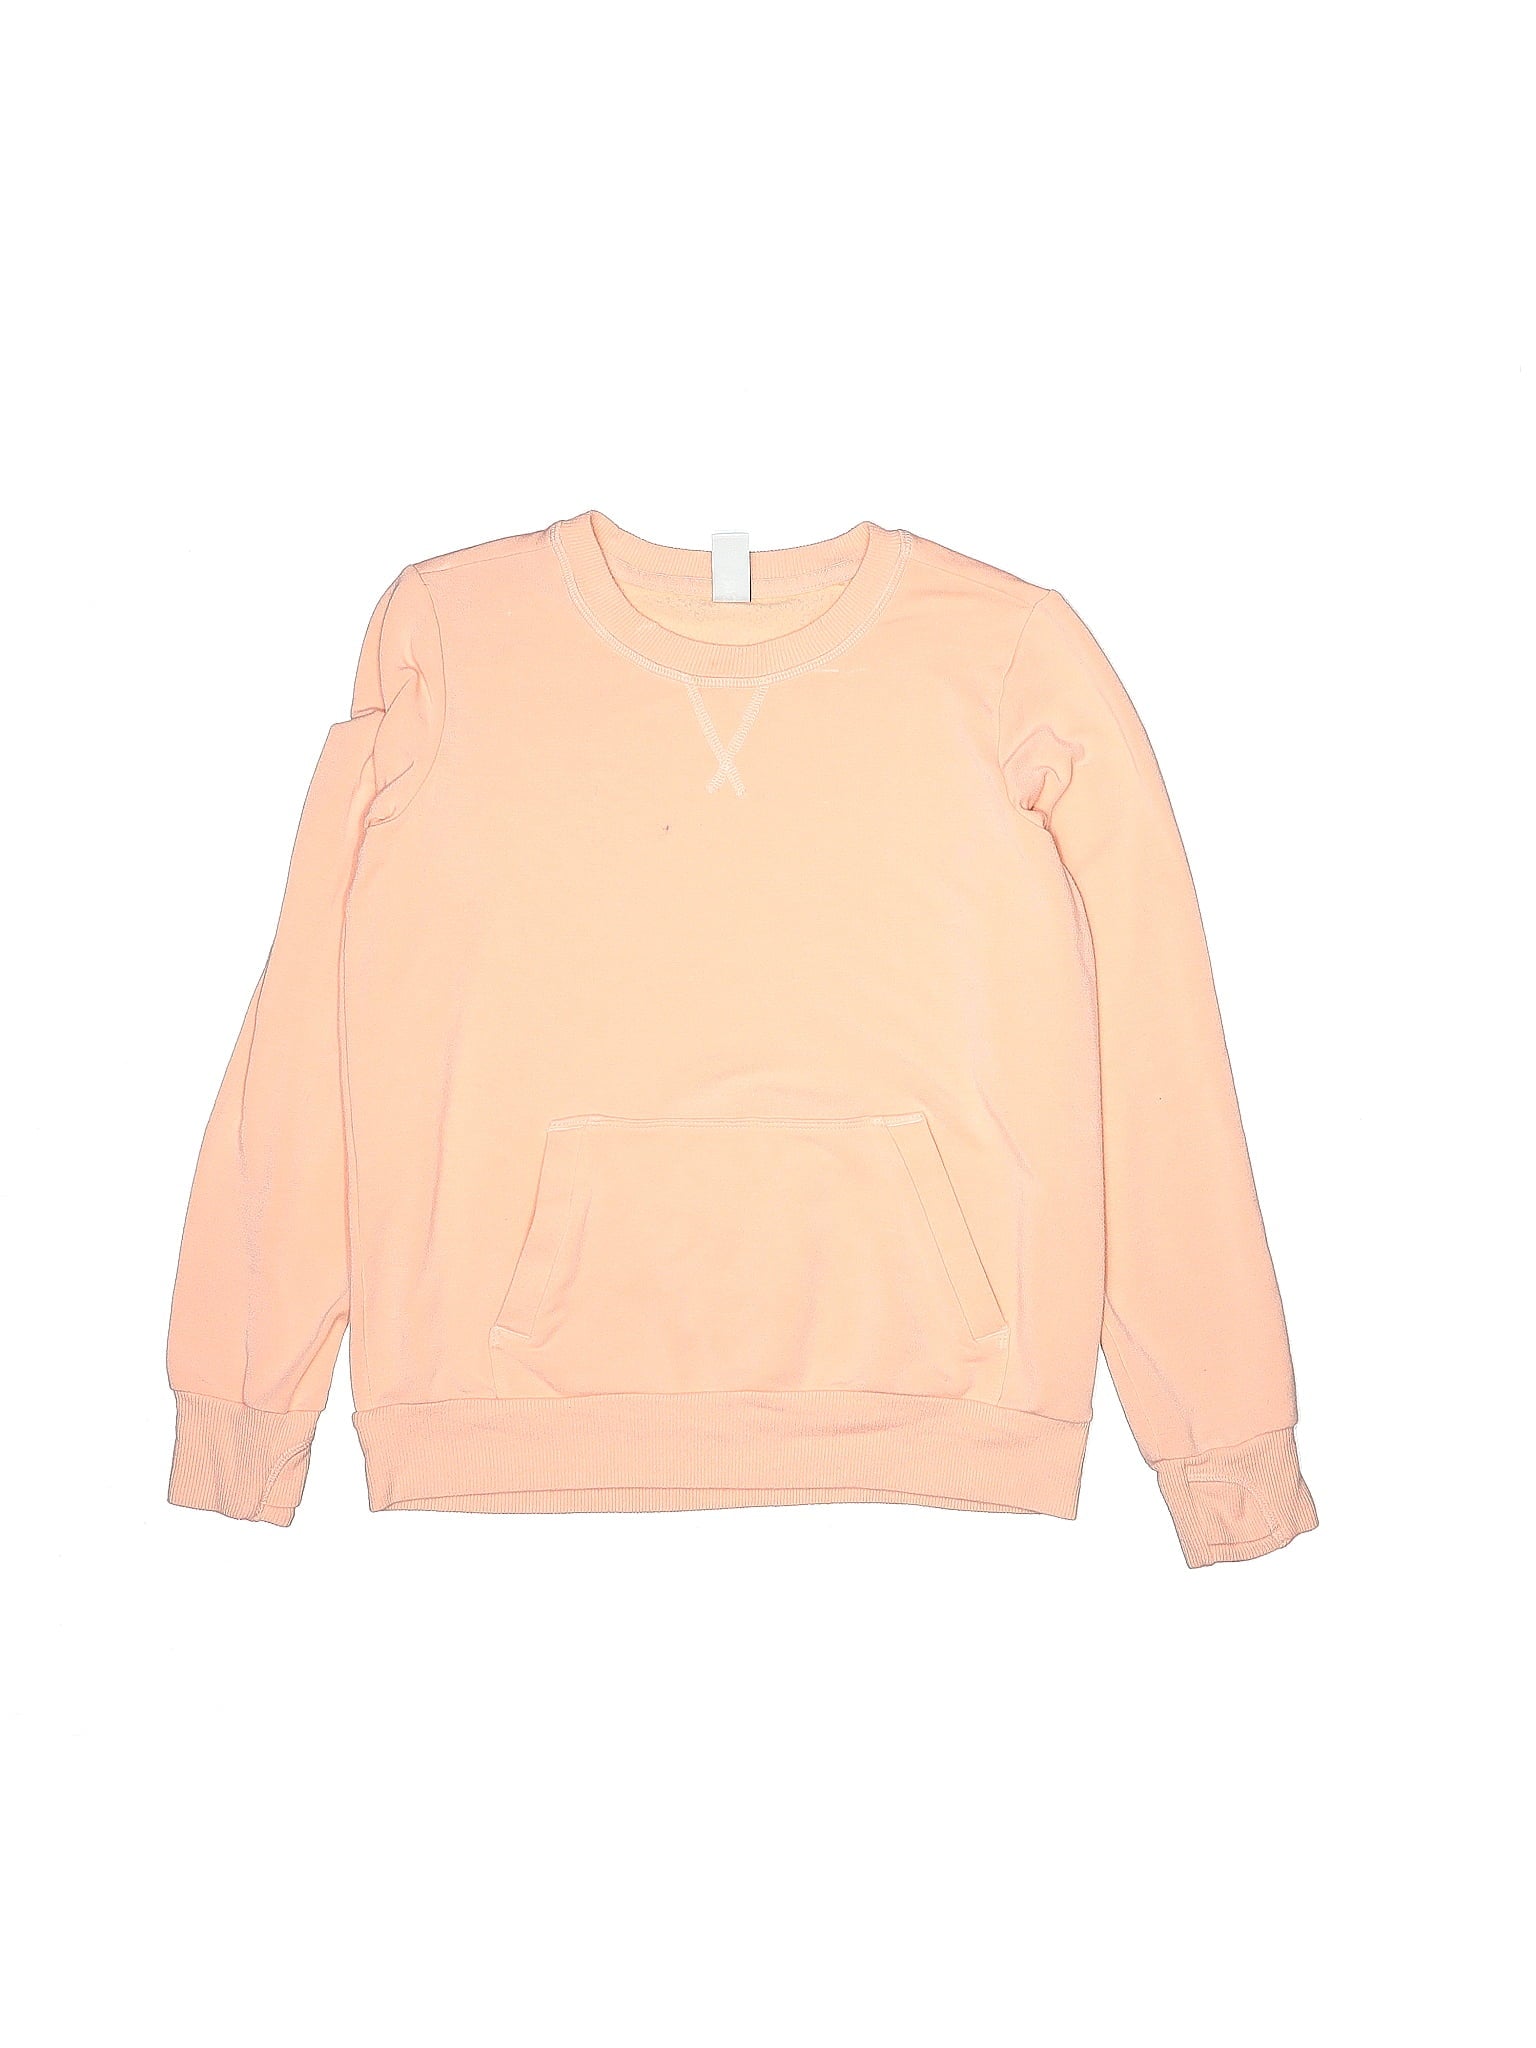 Girl Energy Crewneck Sweatshirt size - 12